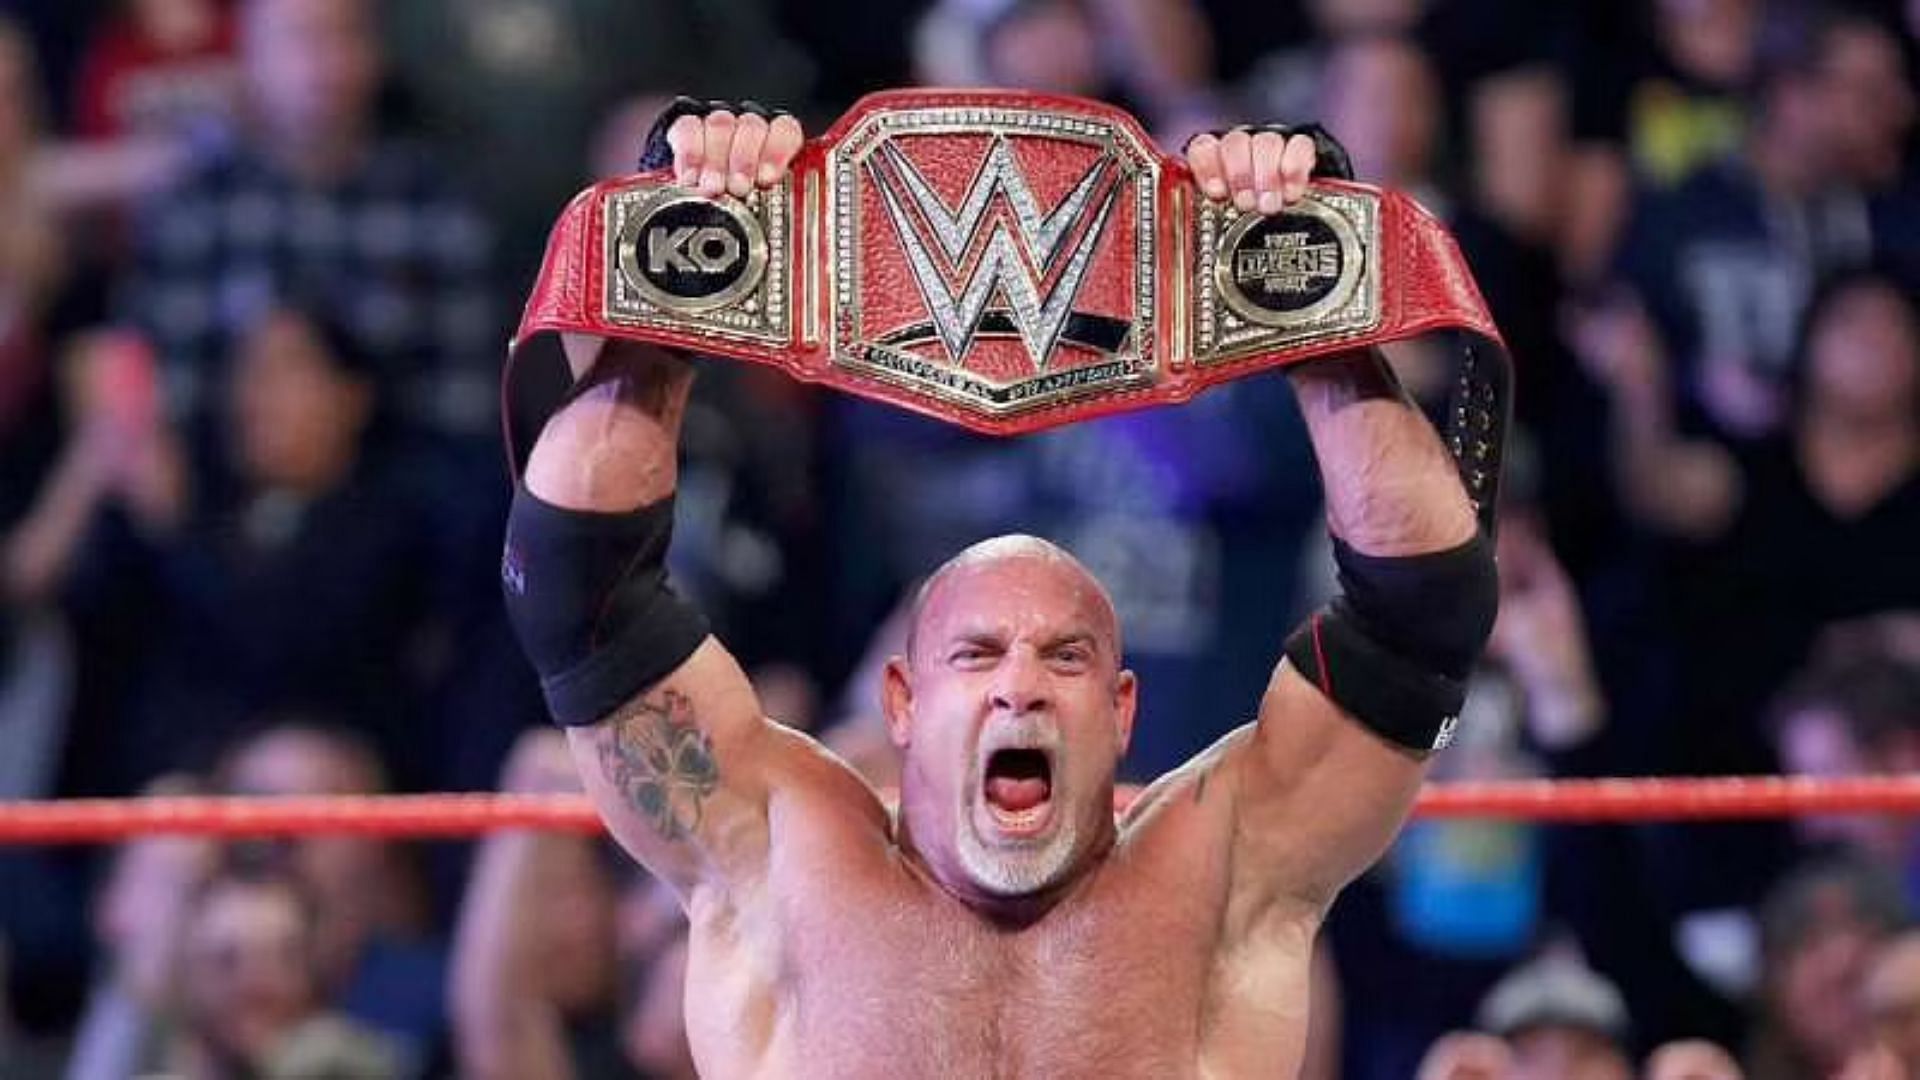 Американский реслинг на русском языке. Goldberg WWE Champion. Звезда реслинга Голдберг. Билл реслинг.